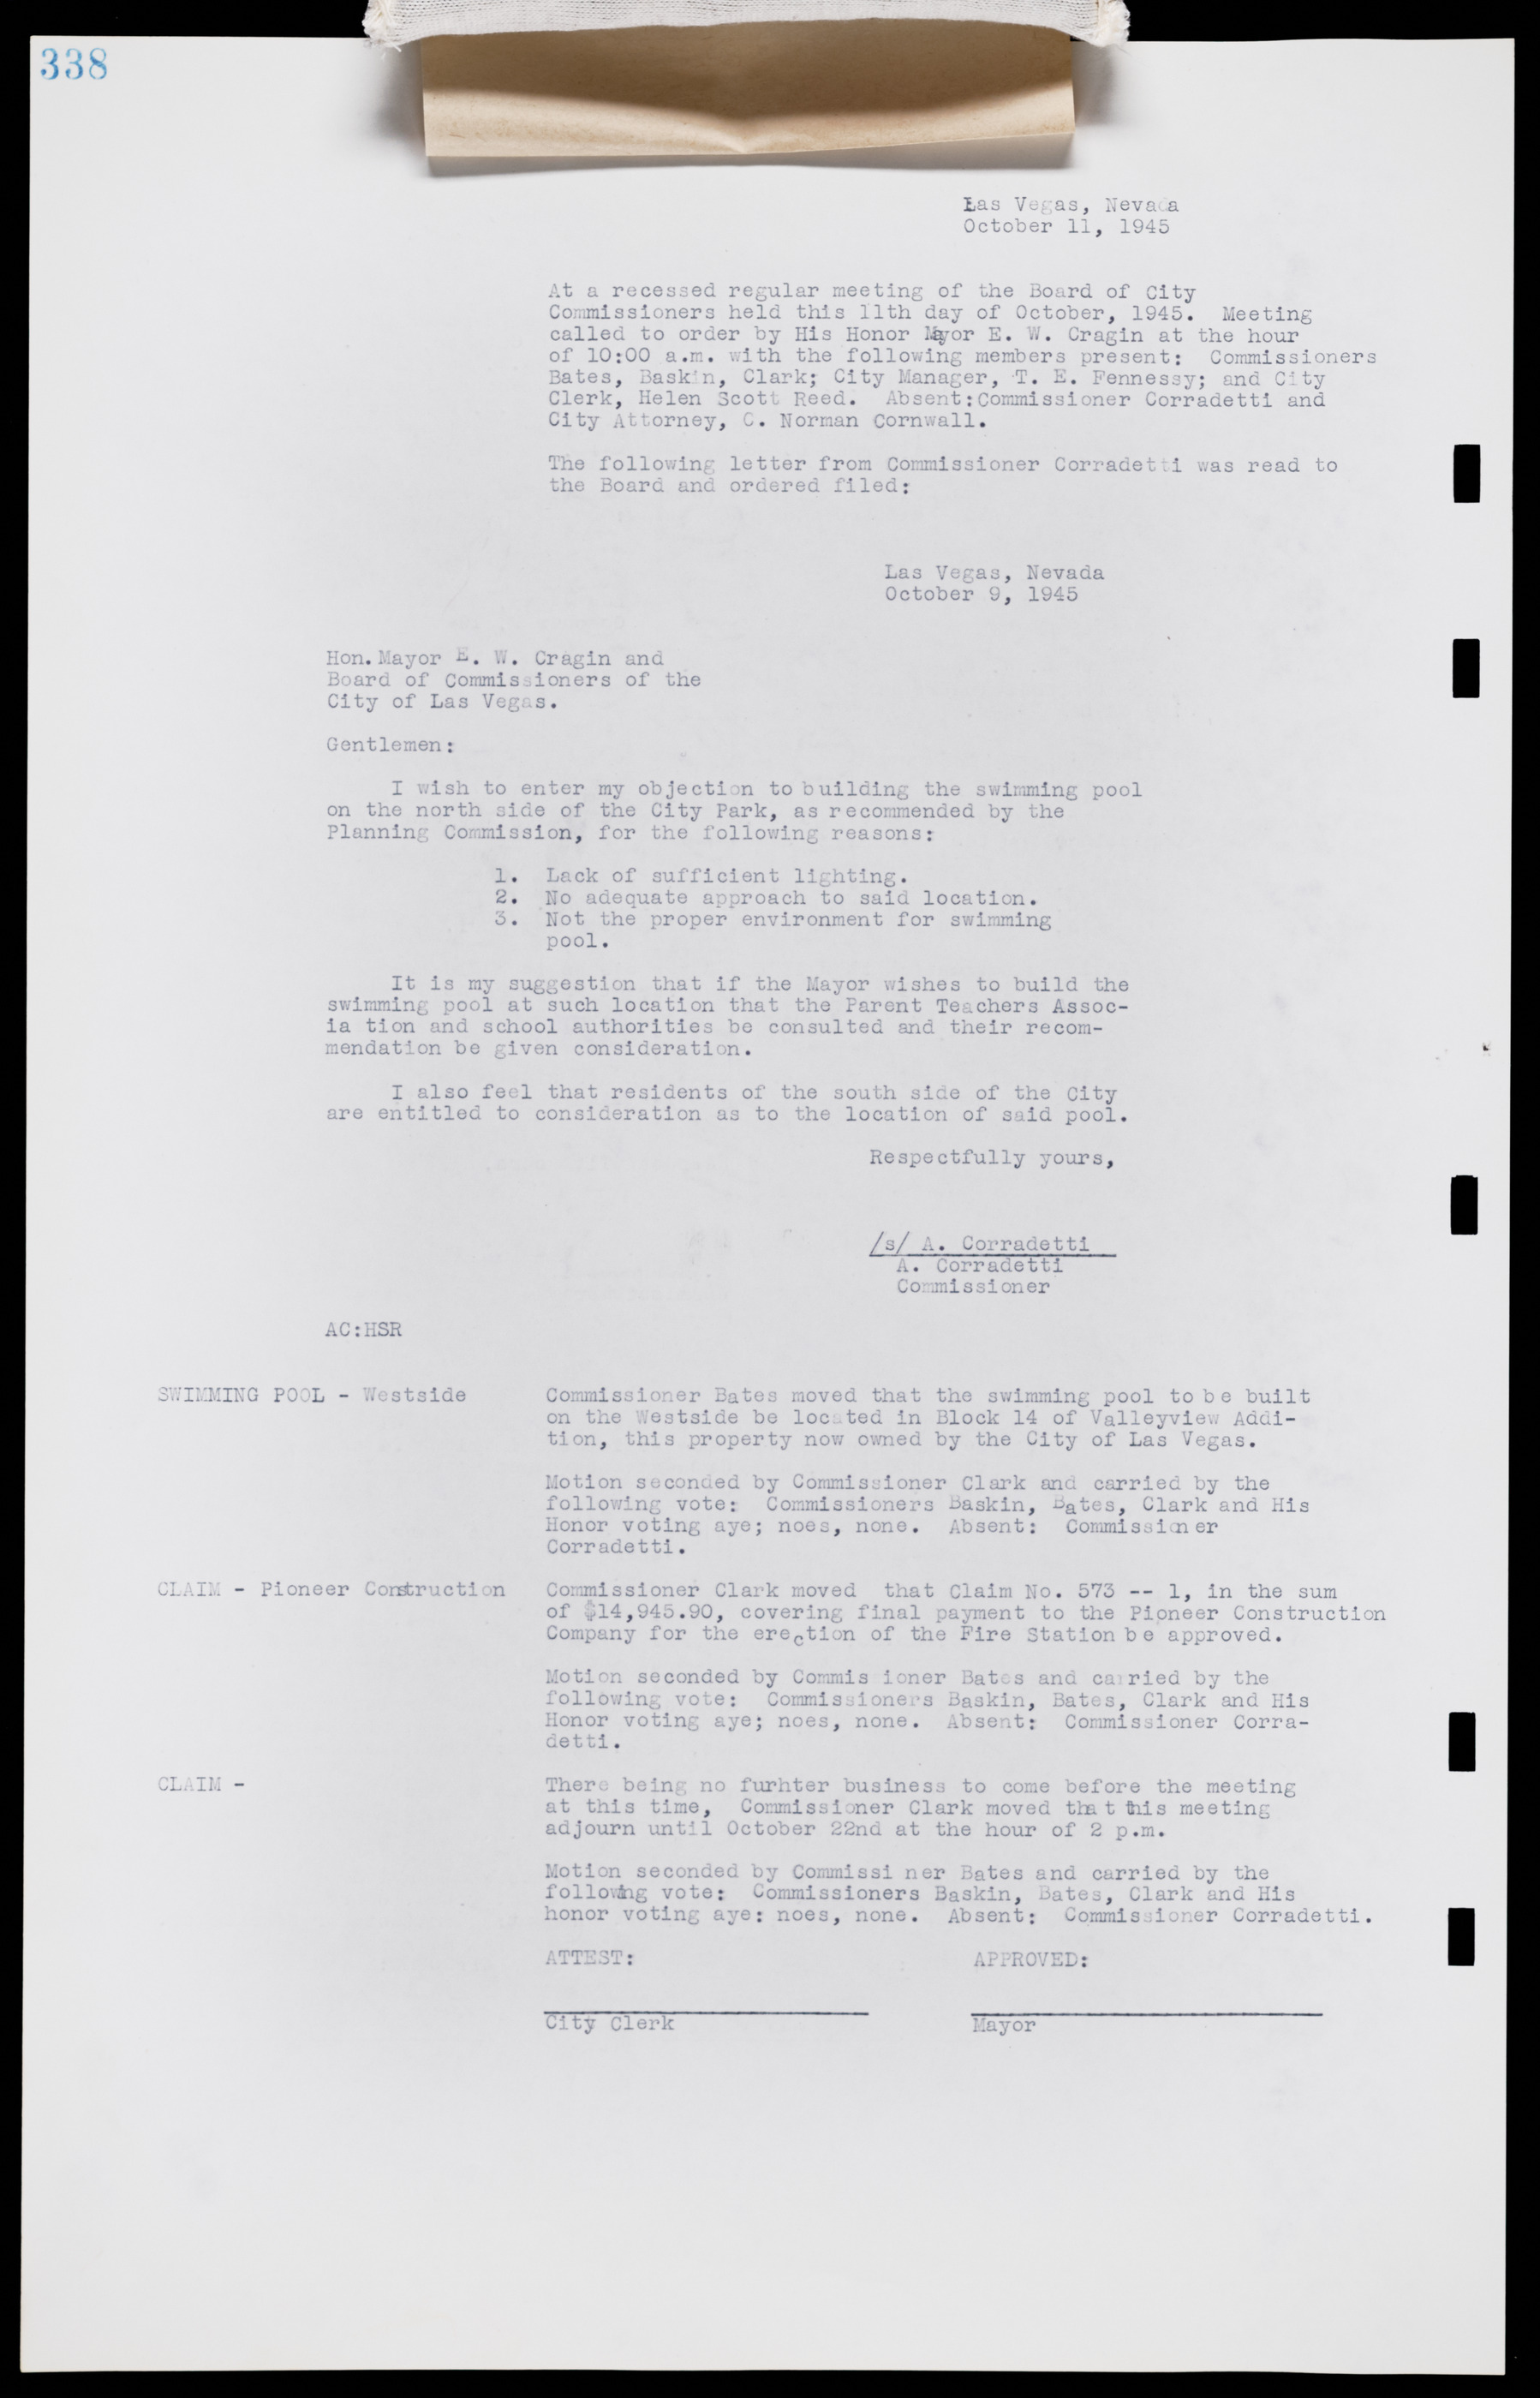 Las Vegas City Commission Minutes, August 11, 1942 to December 30, 1946, lvc000005-363